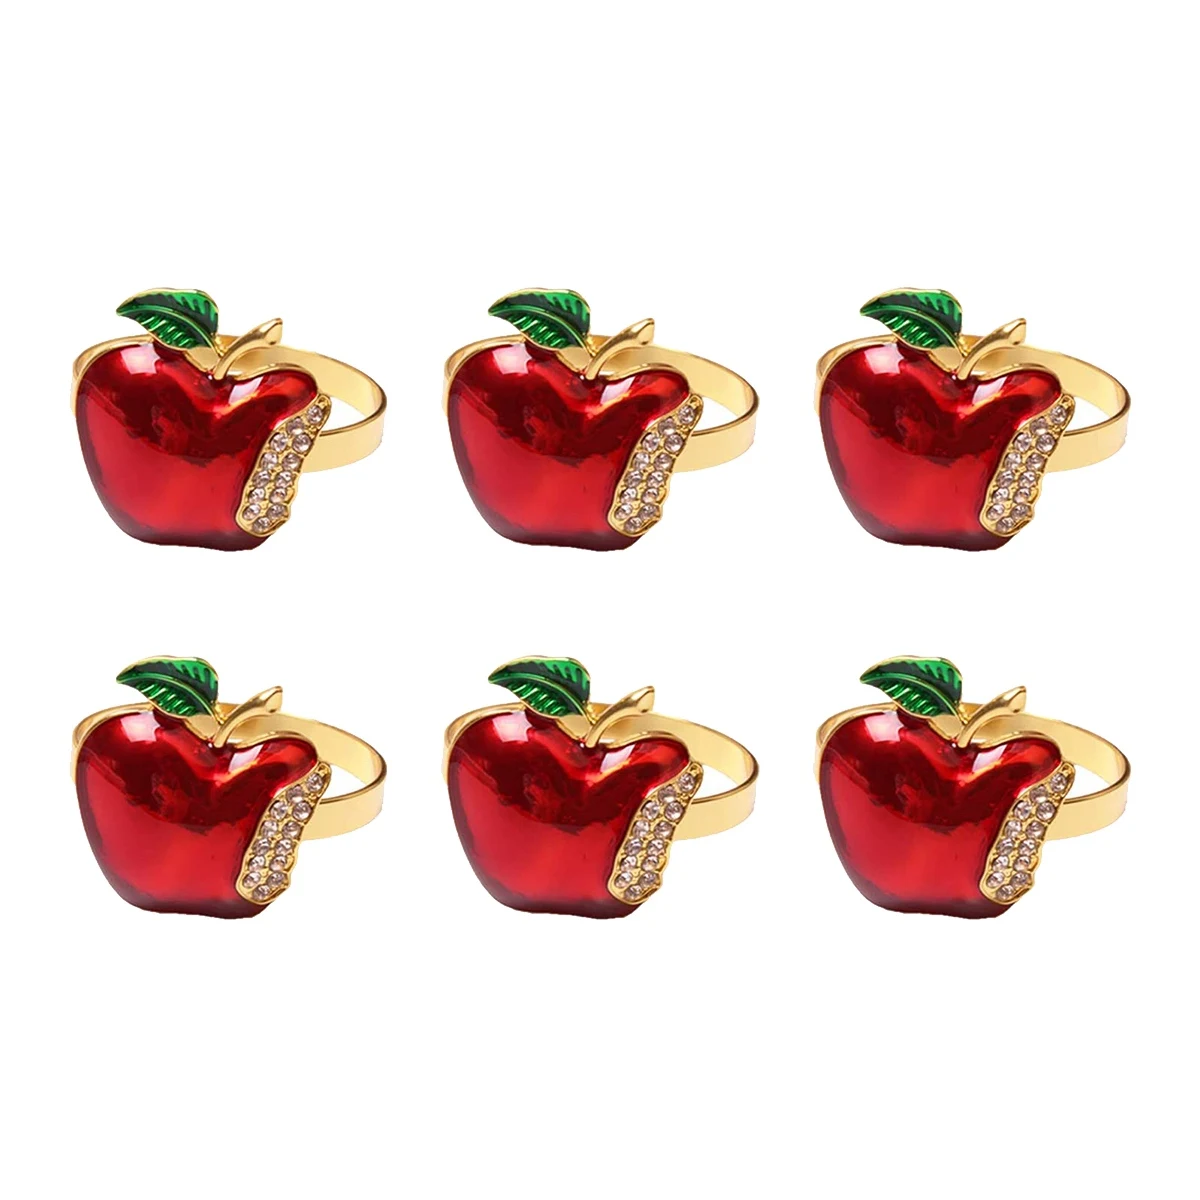 Кольца для салфеток Набор из 6 красных яблок Кольцо для салфетки Свадебный ужин Банкет Сервиетка на Рождество День рождения